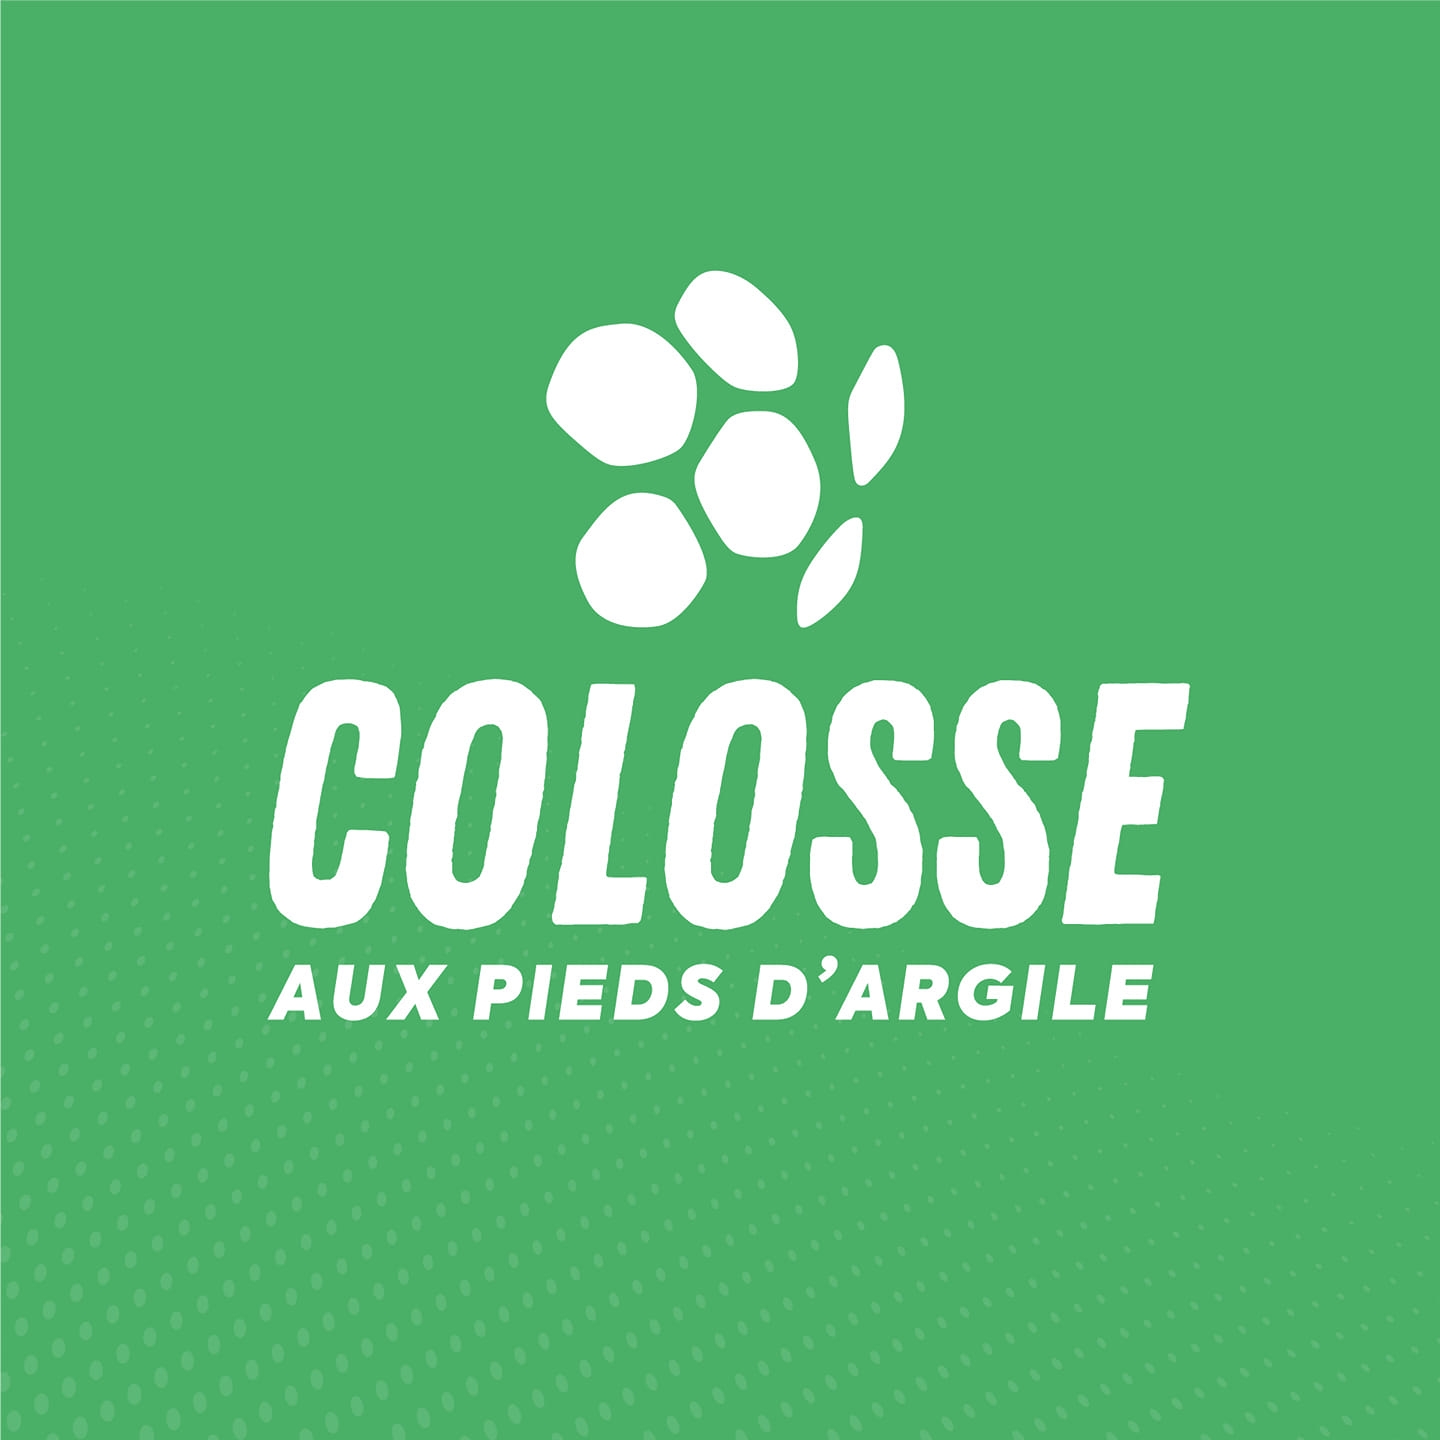 Logo_Colosse_aux_pieds_d'argile